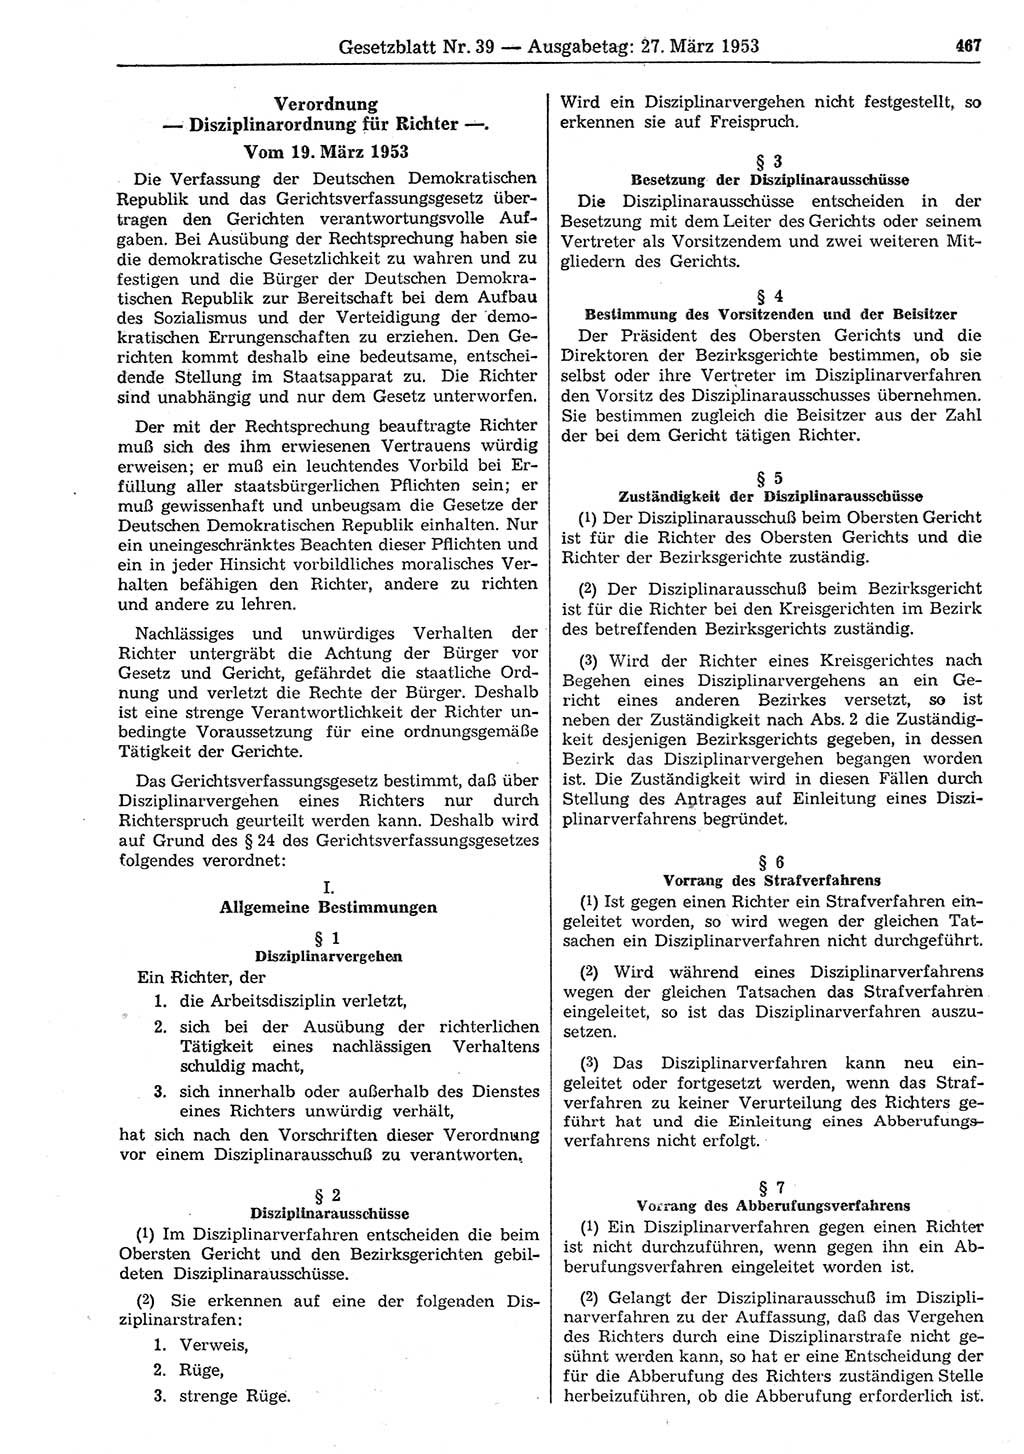 Gesetzblatt (GBl.) der Deutschen Demokratischen Republik (DDR) 1953, Seite 467 (GBl. DDR 1953, S. 467)